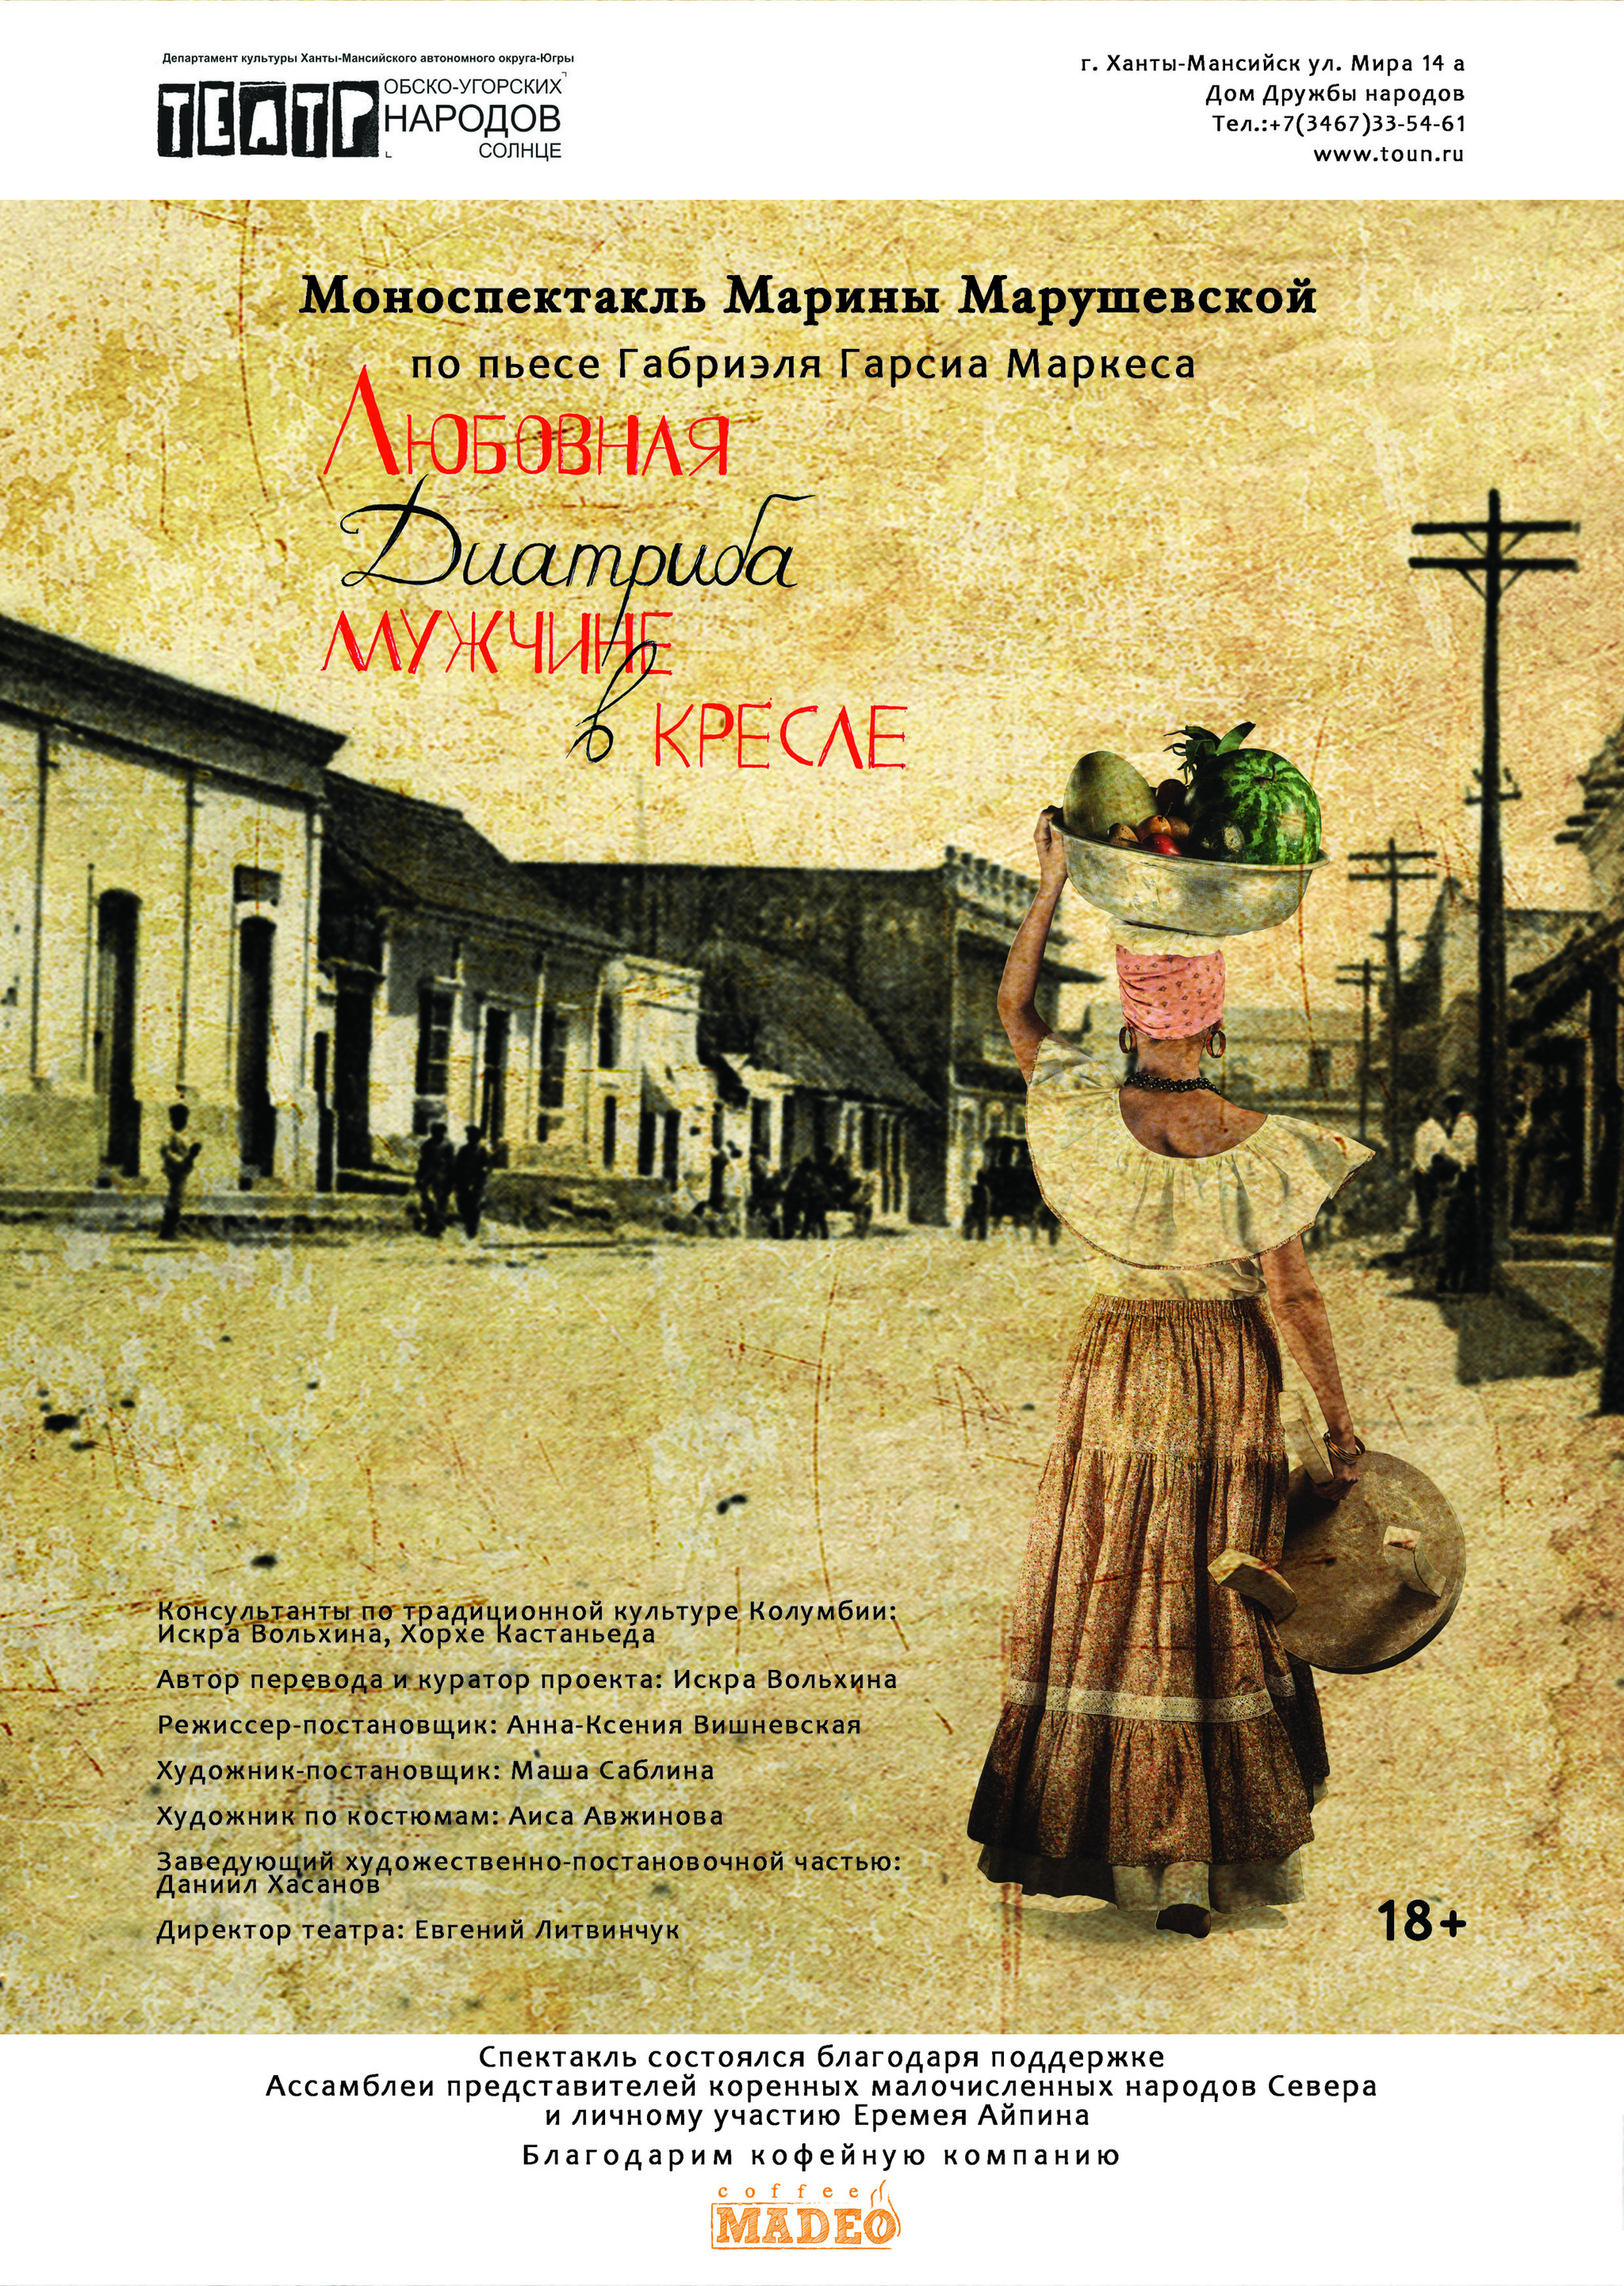 Колумбийские страсти – на сцене Театра обско-угорских народов «Солнце»